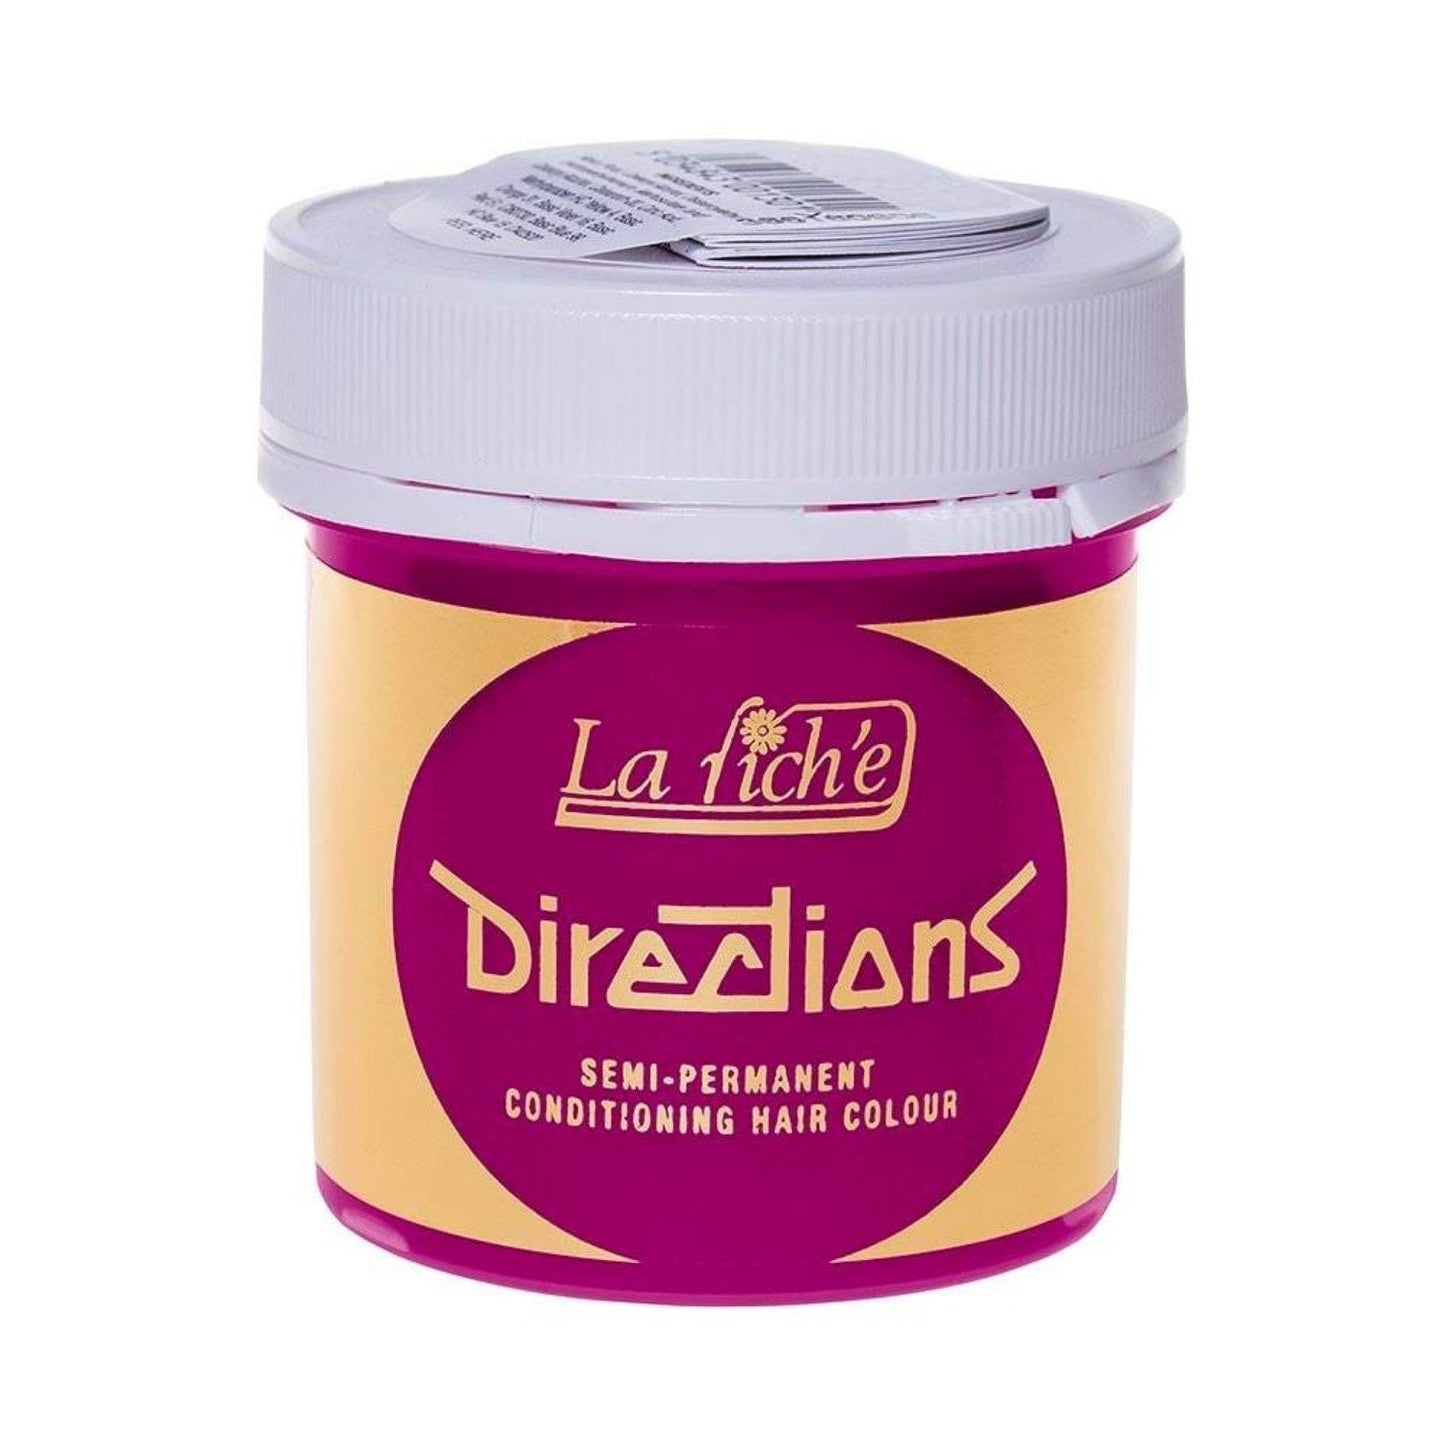 La Riche Directions Vegan Semi Permanent Hair Colour - 100ml - Carnation Pink (SHOP)